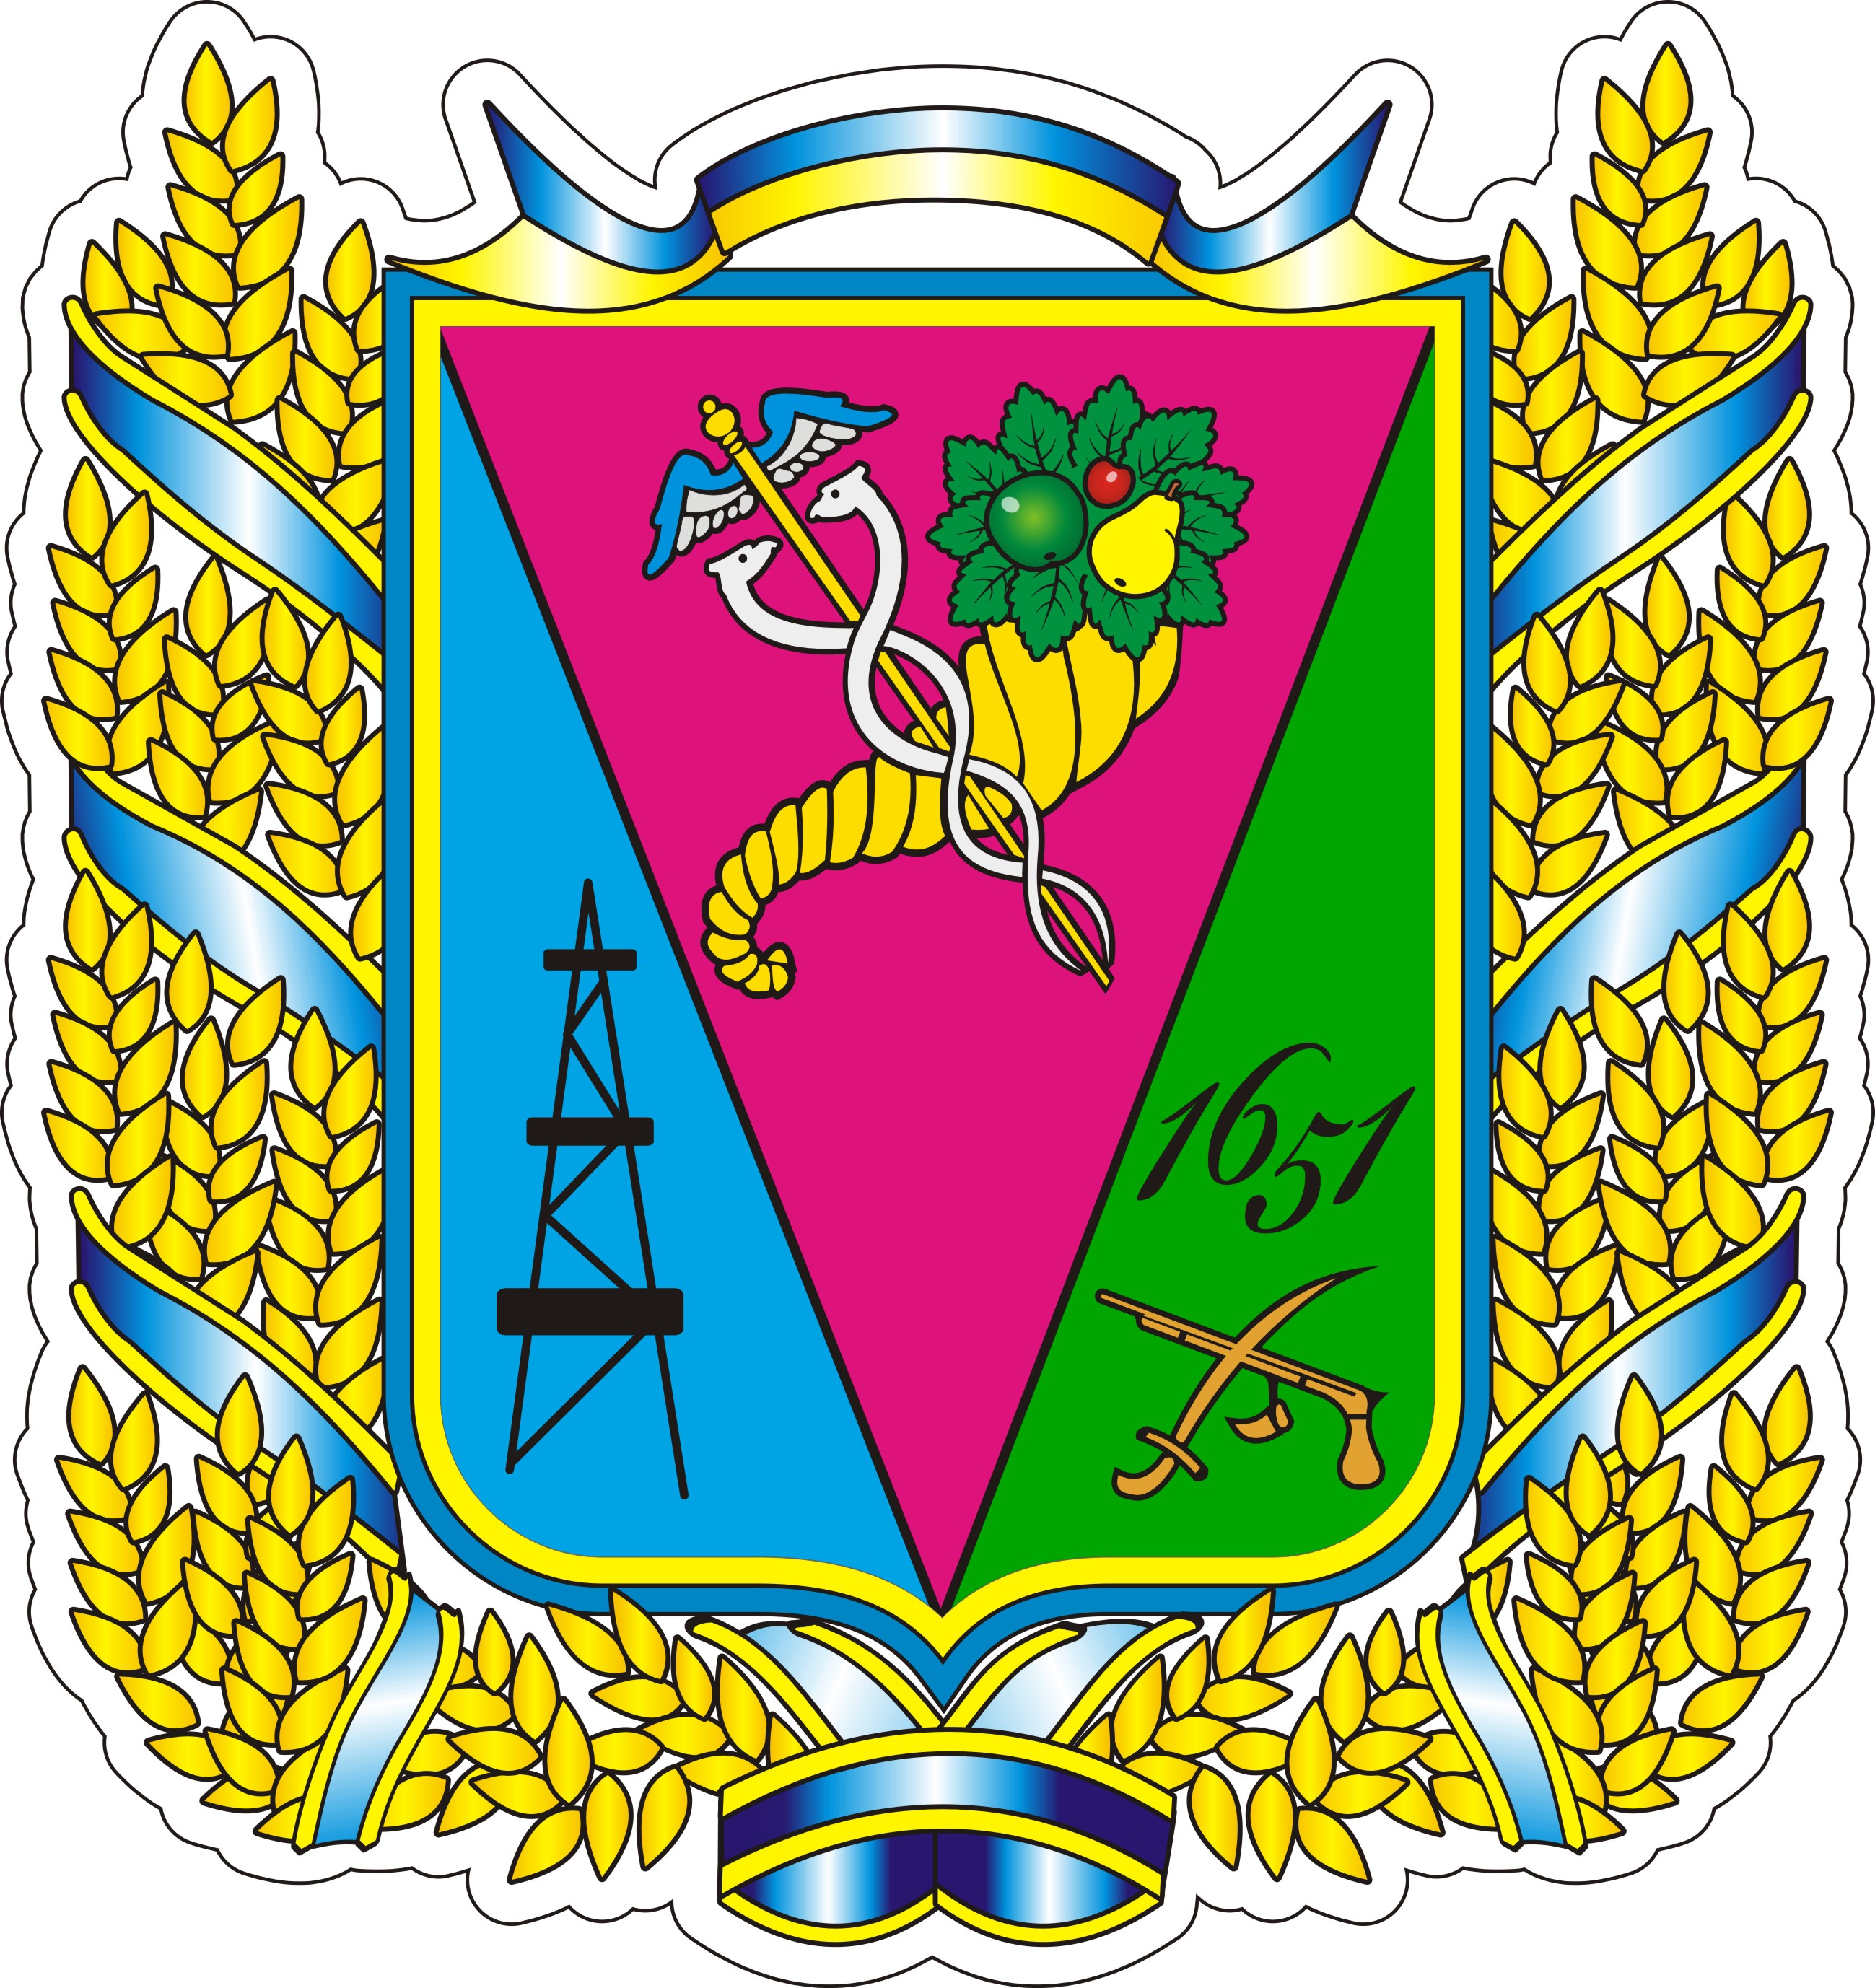 krasnokutska-selyshchna-rada-bohodukhivskoho-raionu-kharkivskoi-oblasti